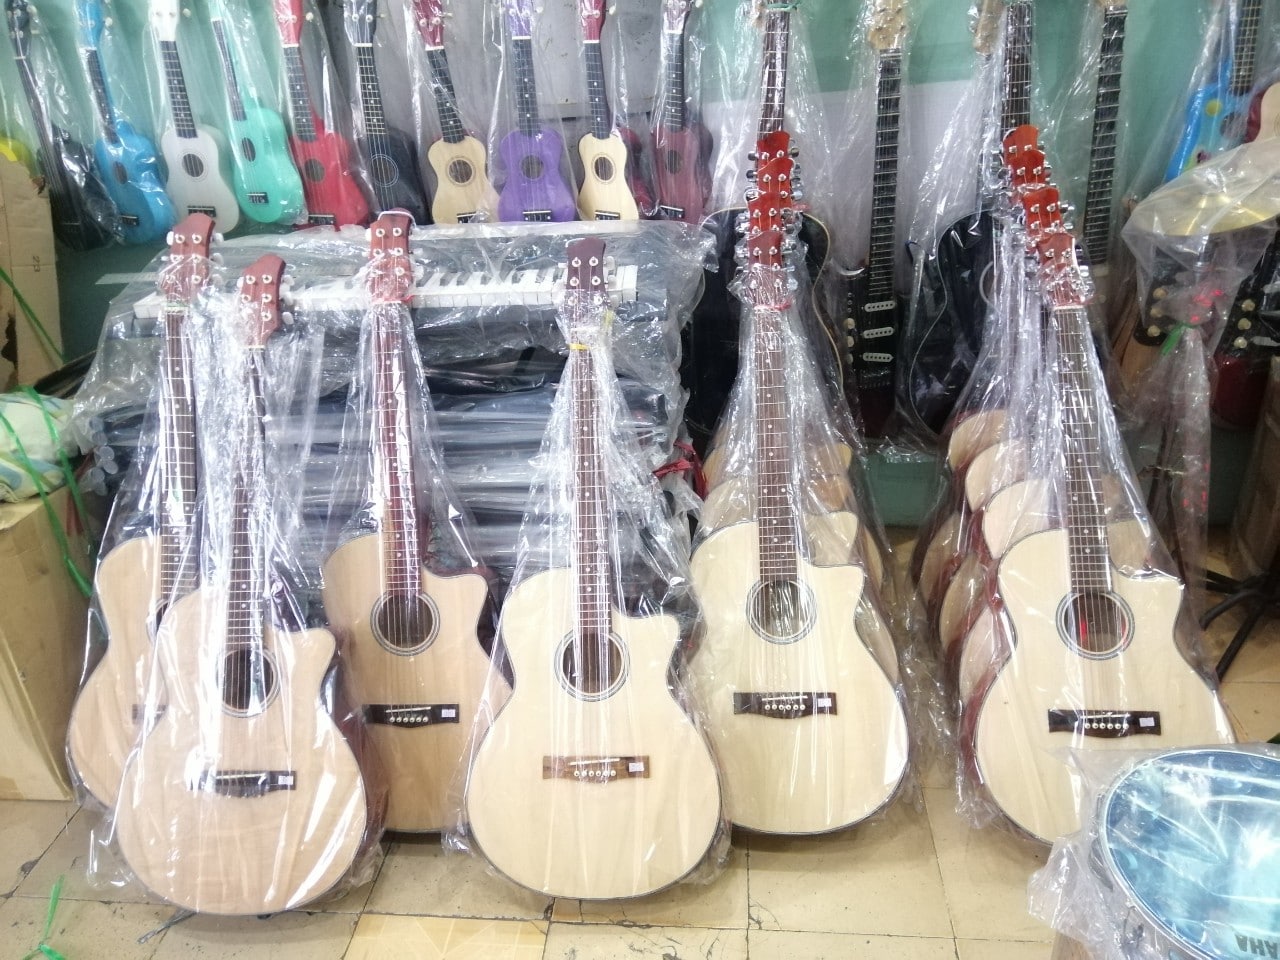 Shop Bán Đàn Guitar Giá Rẻ - Nhạc Cụ Minh Phát